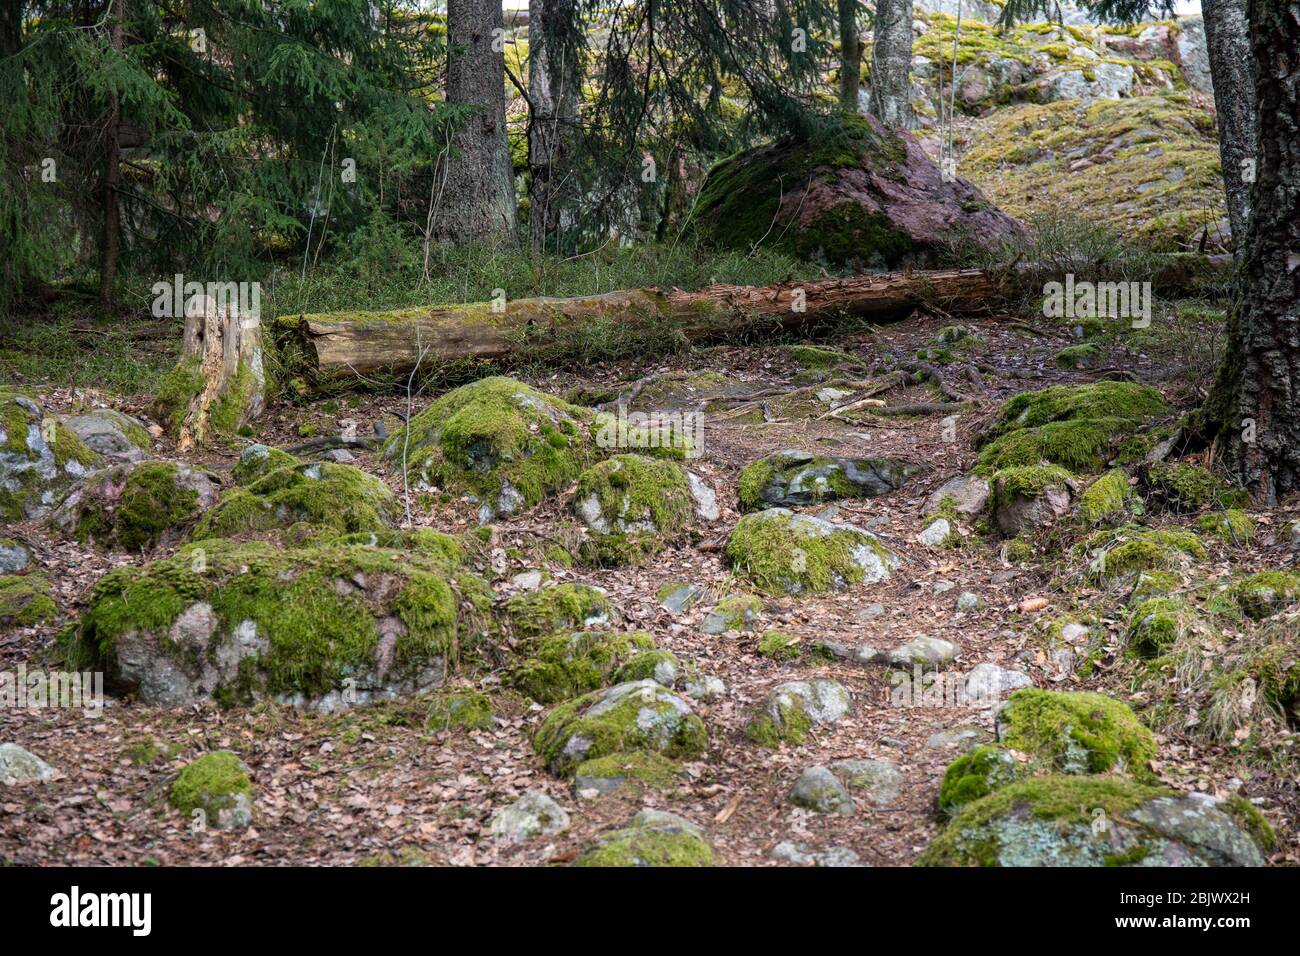 Moss couvrait des rochers ronds, autrefois des rochers de plage de la mer de Littorina, à côté de l'arbre de snag tombé par le sentier naturel de Hanikka à Espoo, en Finlande Banque D'Images